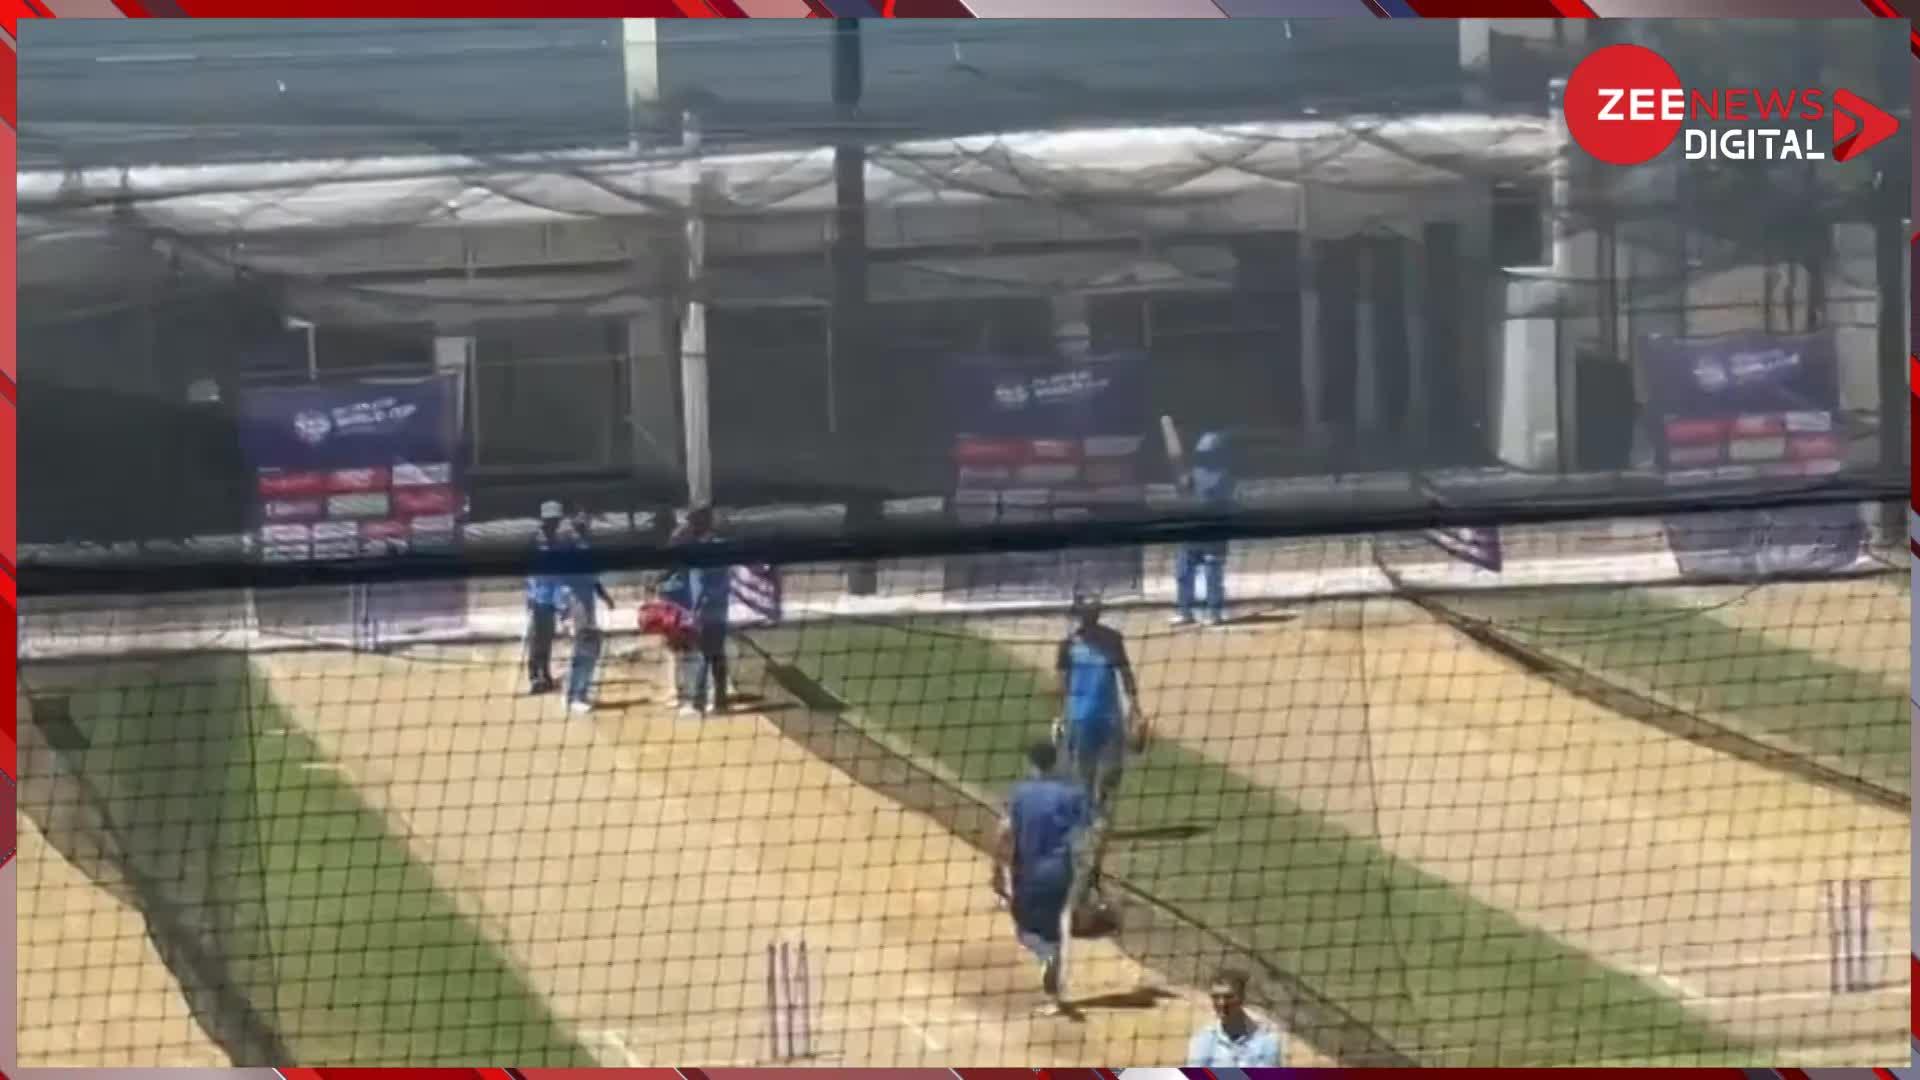 T20 World Cup: इंग्लैंड के खिलाफ सेमीफाइनल से पहले टीम इंडिया को तगड़ा झटका, कप्तान रोहित शर्मा की कलाई में लगी चोट